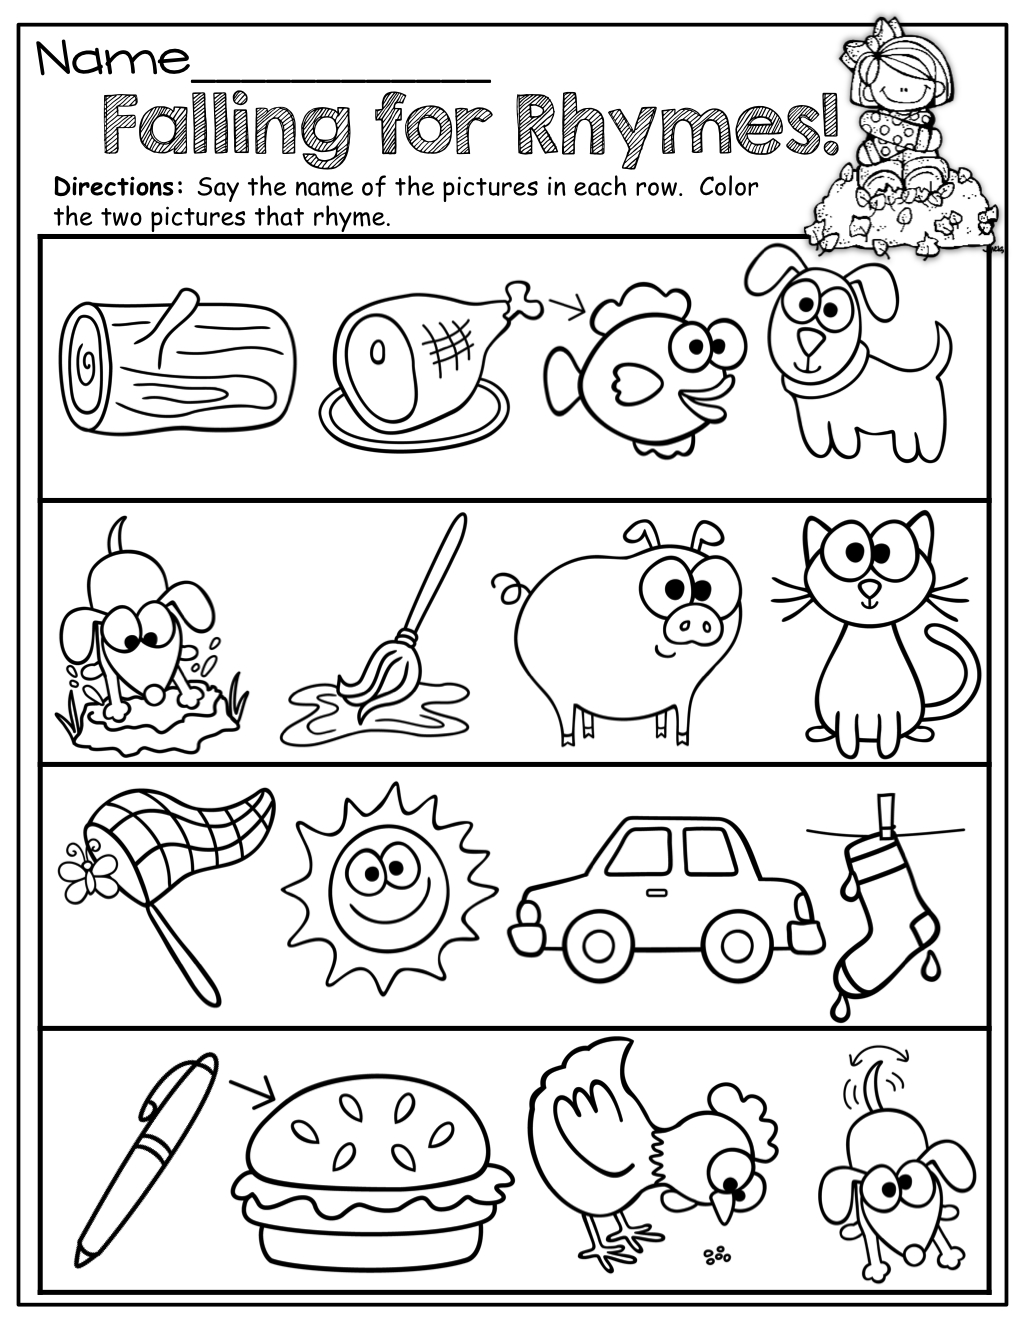 Free Printable Rhyming Activities For Kindergarten - Free Printable